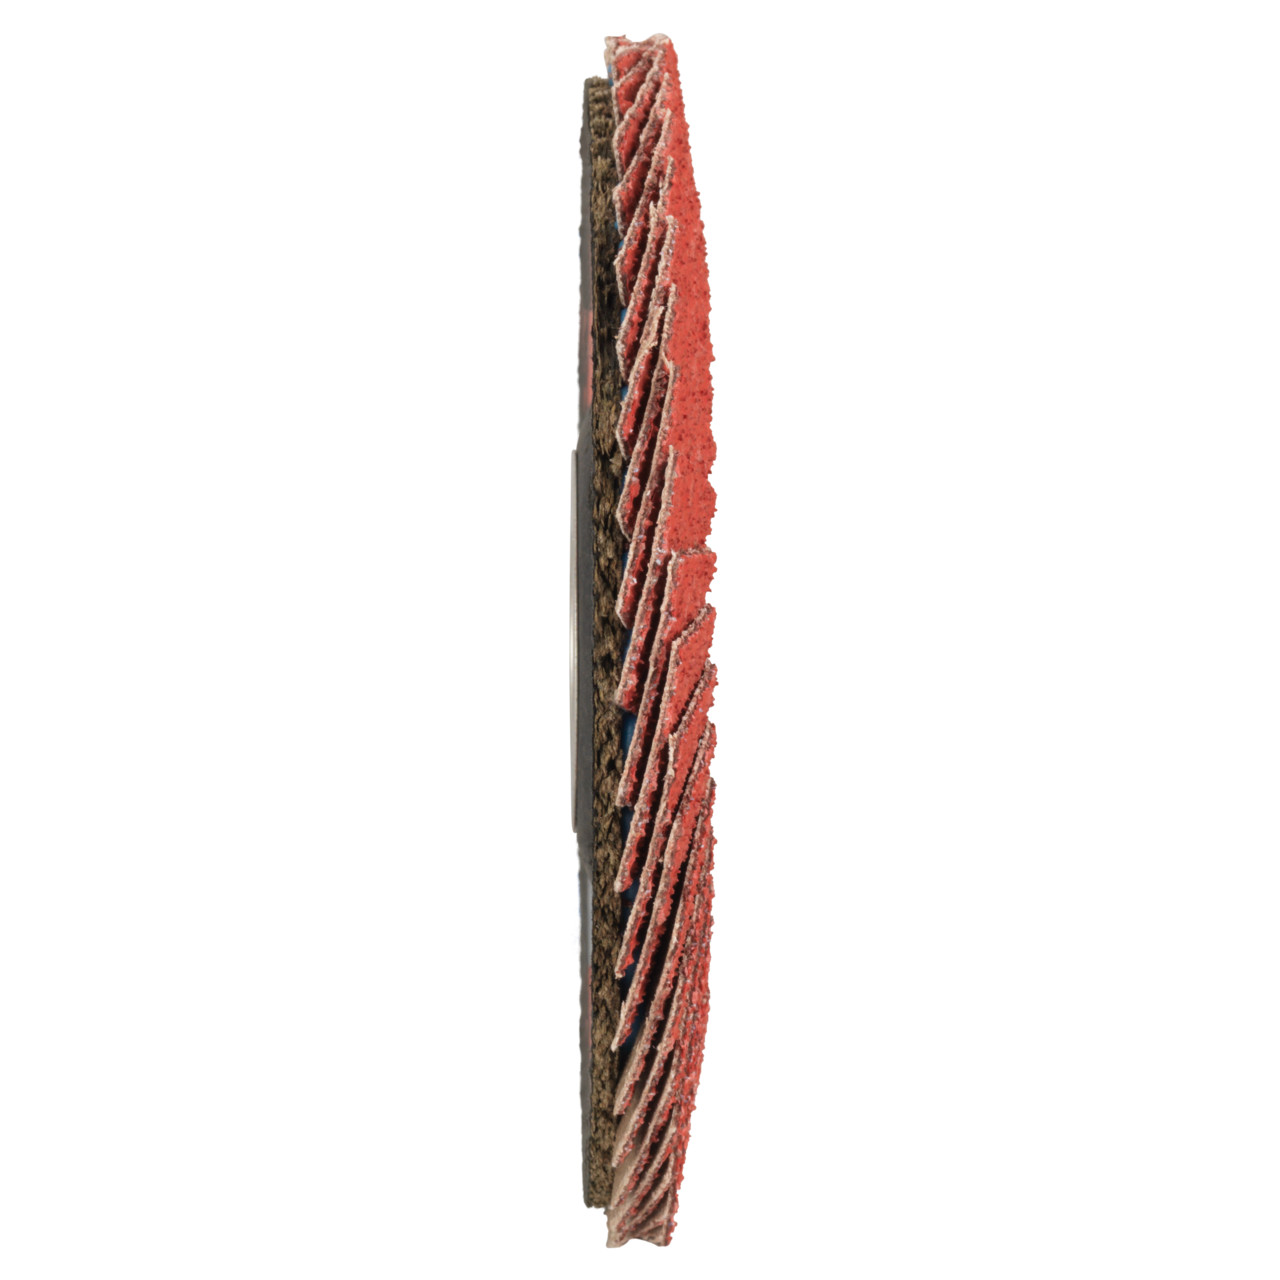 Tyrolit Getande borgring DxH 125x22,23 CERAMIC voor roestvrij staal, P40, vorm: 28A - rechte uitvoering (glasvezeldragerhuisversie), Art. 719799